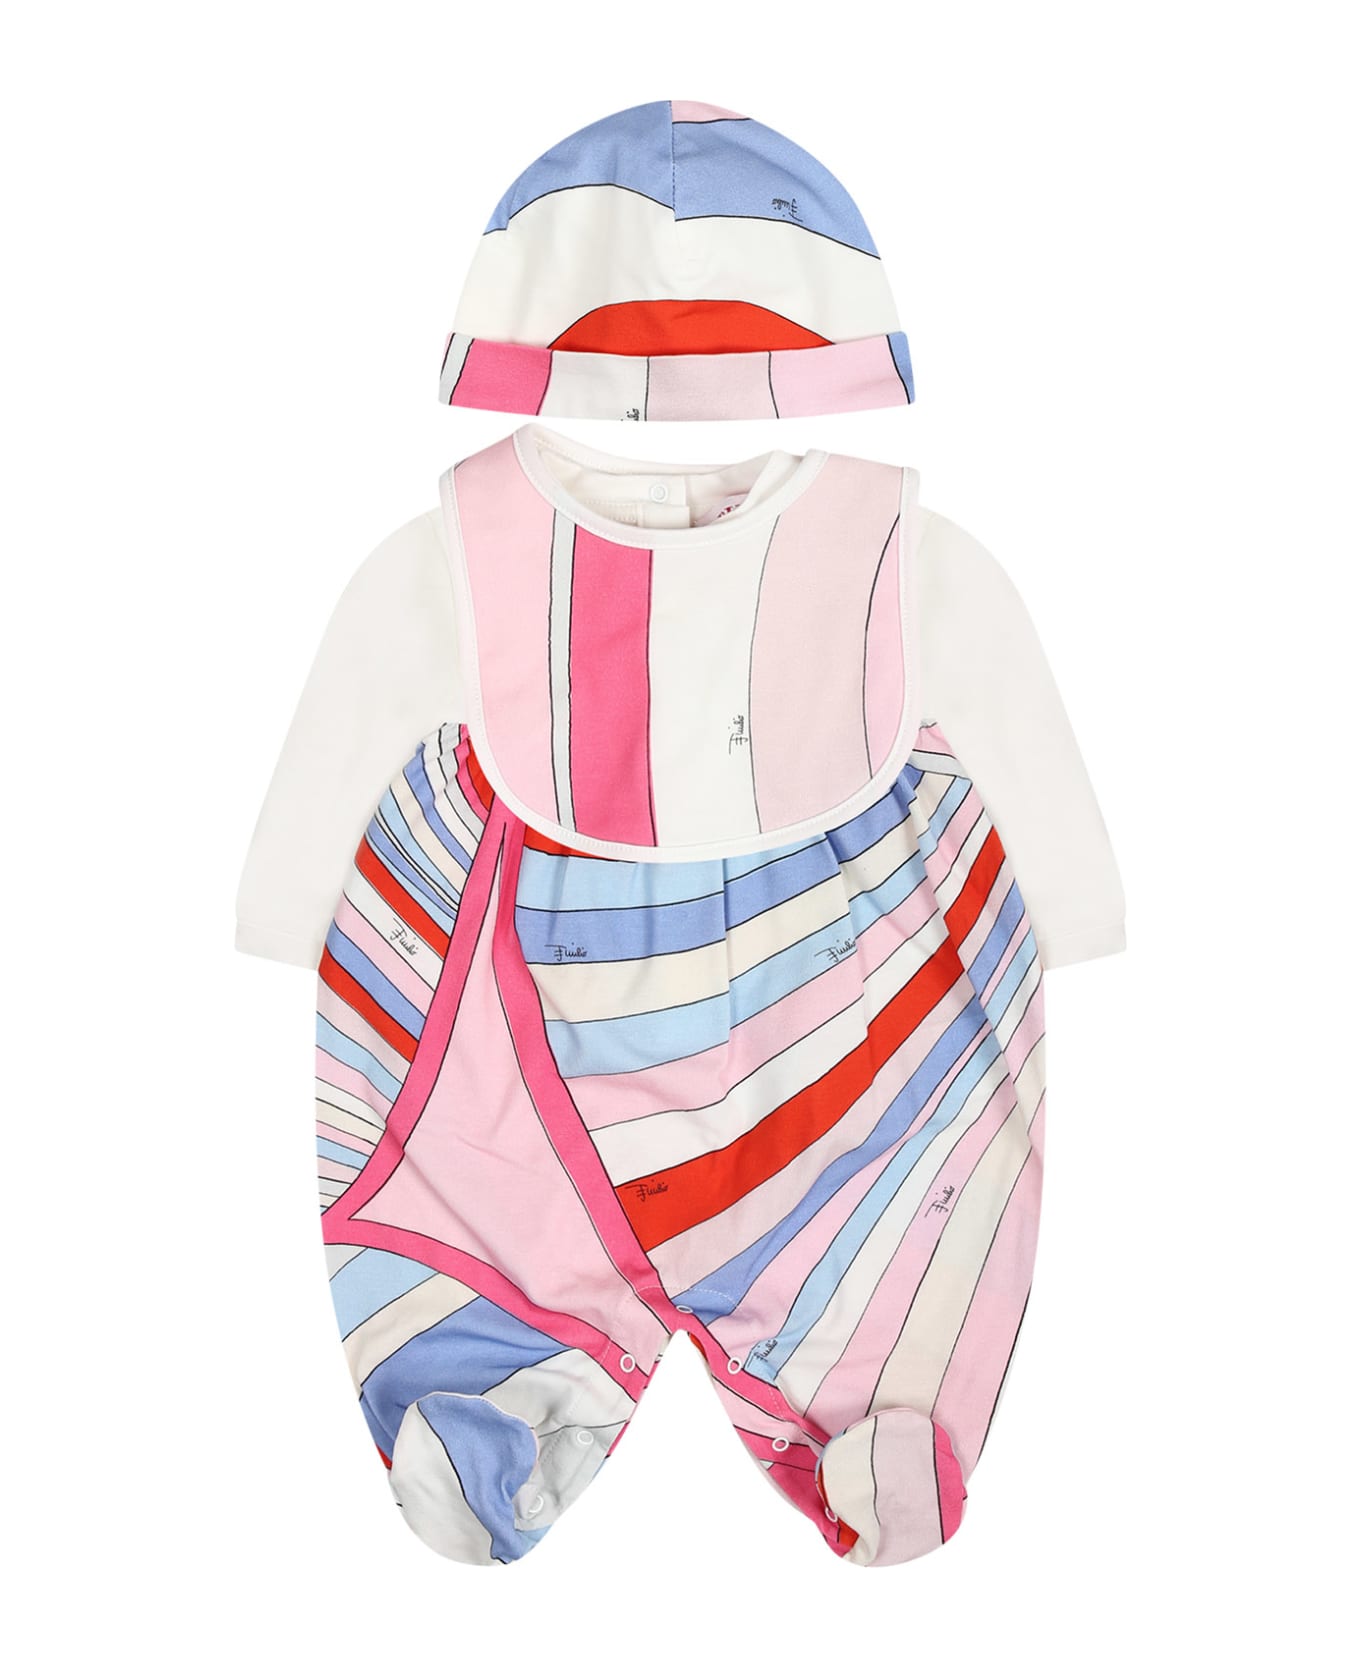 Pucci Multicolor Romper Set For Baby Girl - Multicolor